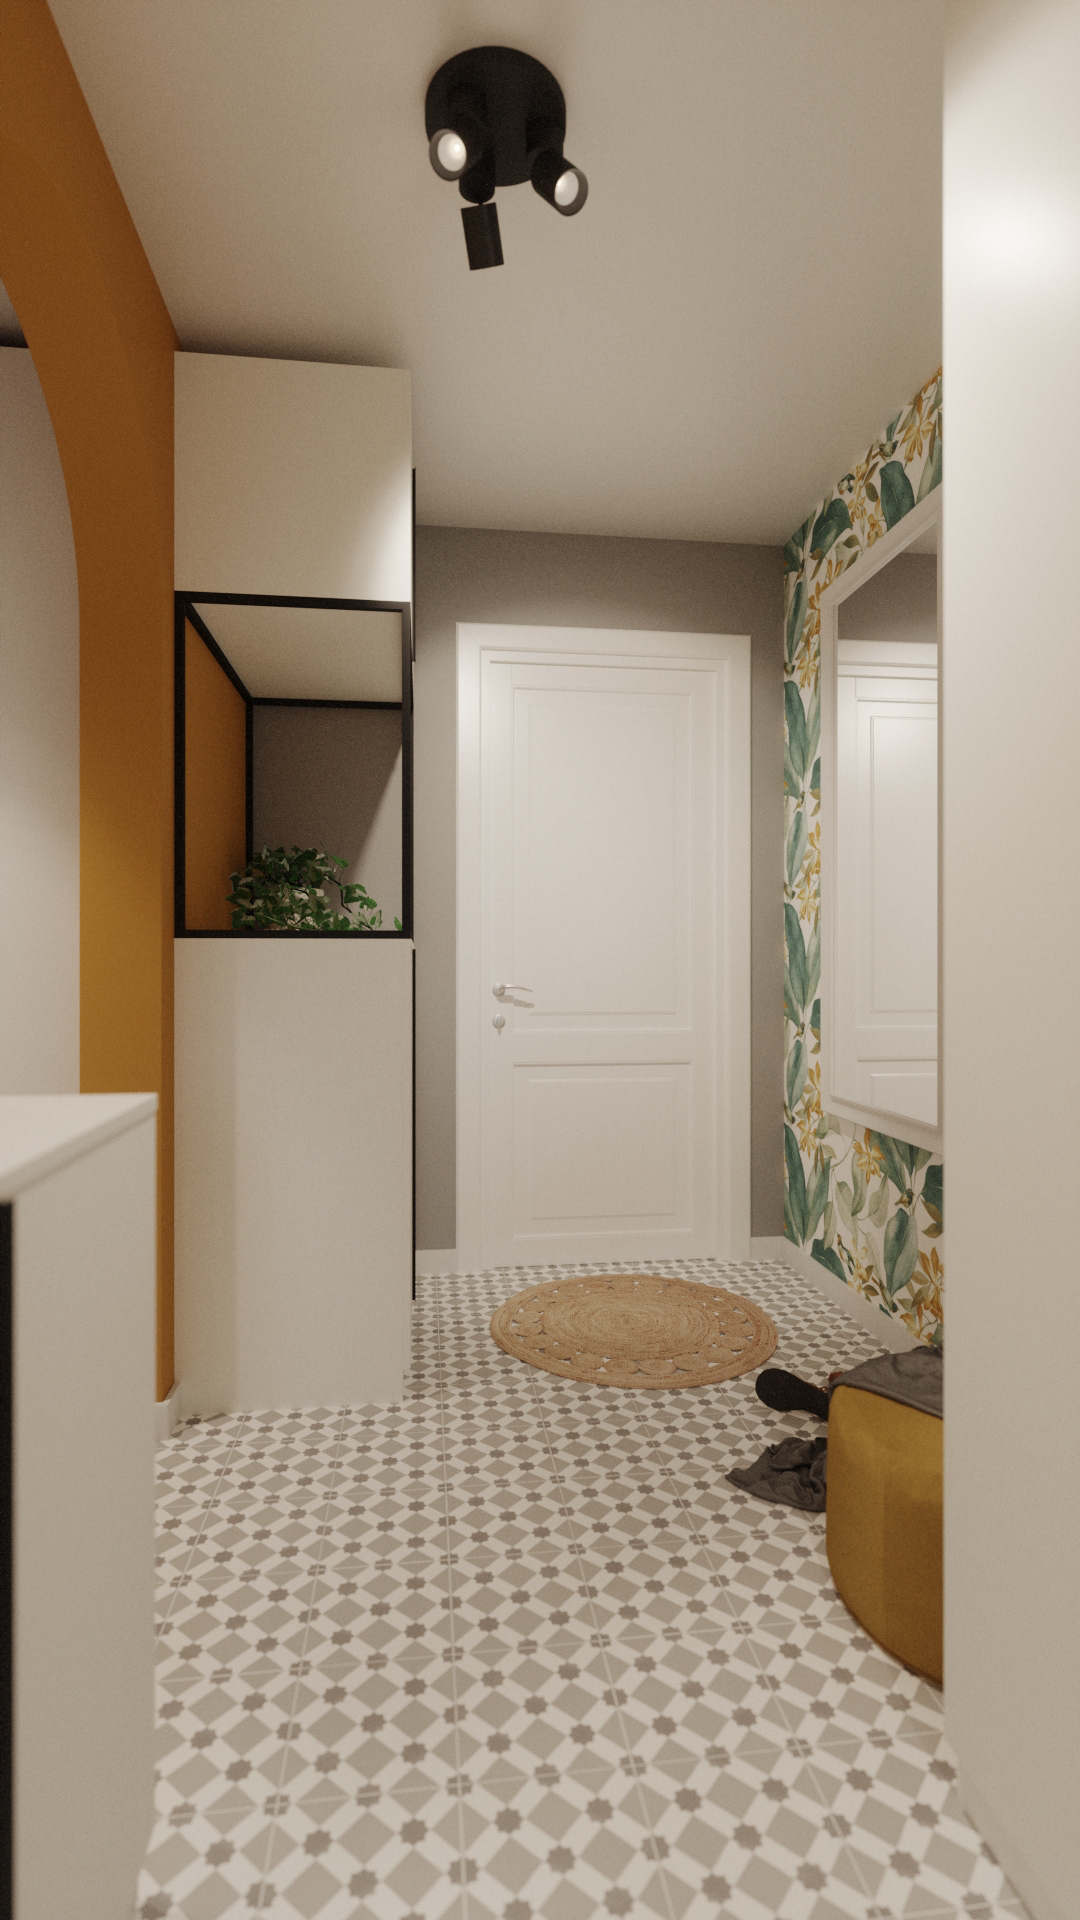 3ds max archviz CGI FStorm indoor Render rendering studio visualization